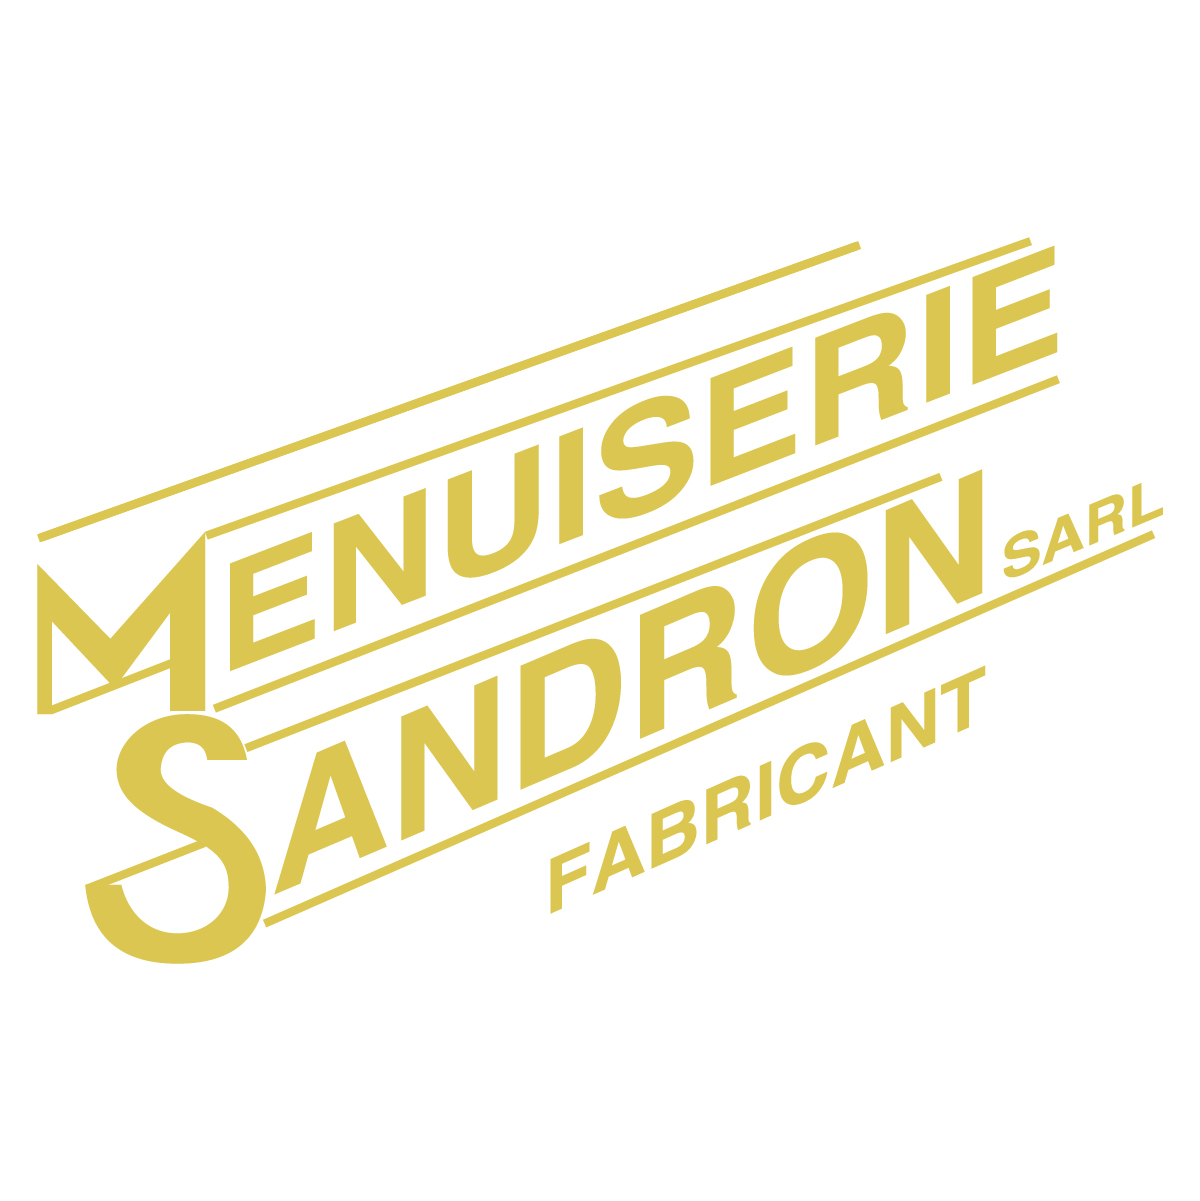 (c) Menuiserie-sandron-ain.fr